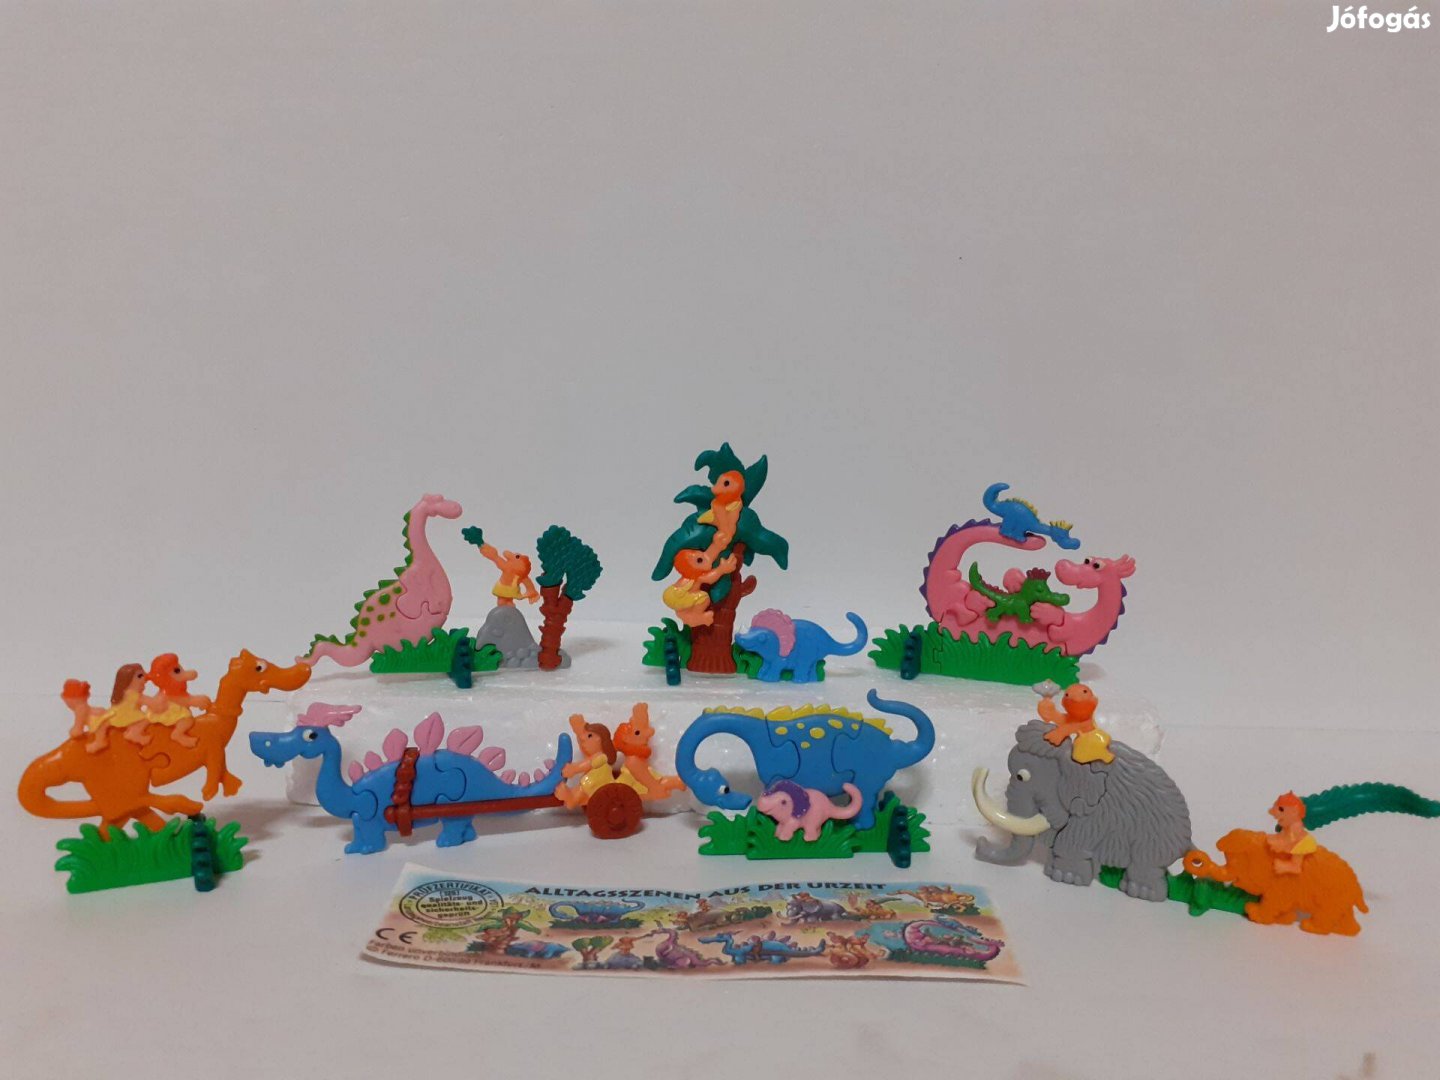 Kinder 3D Plasztik Puzzle / Ókor / 7 db Papírral